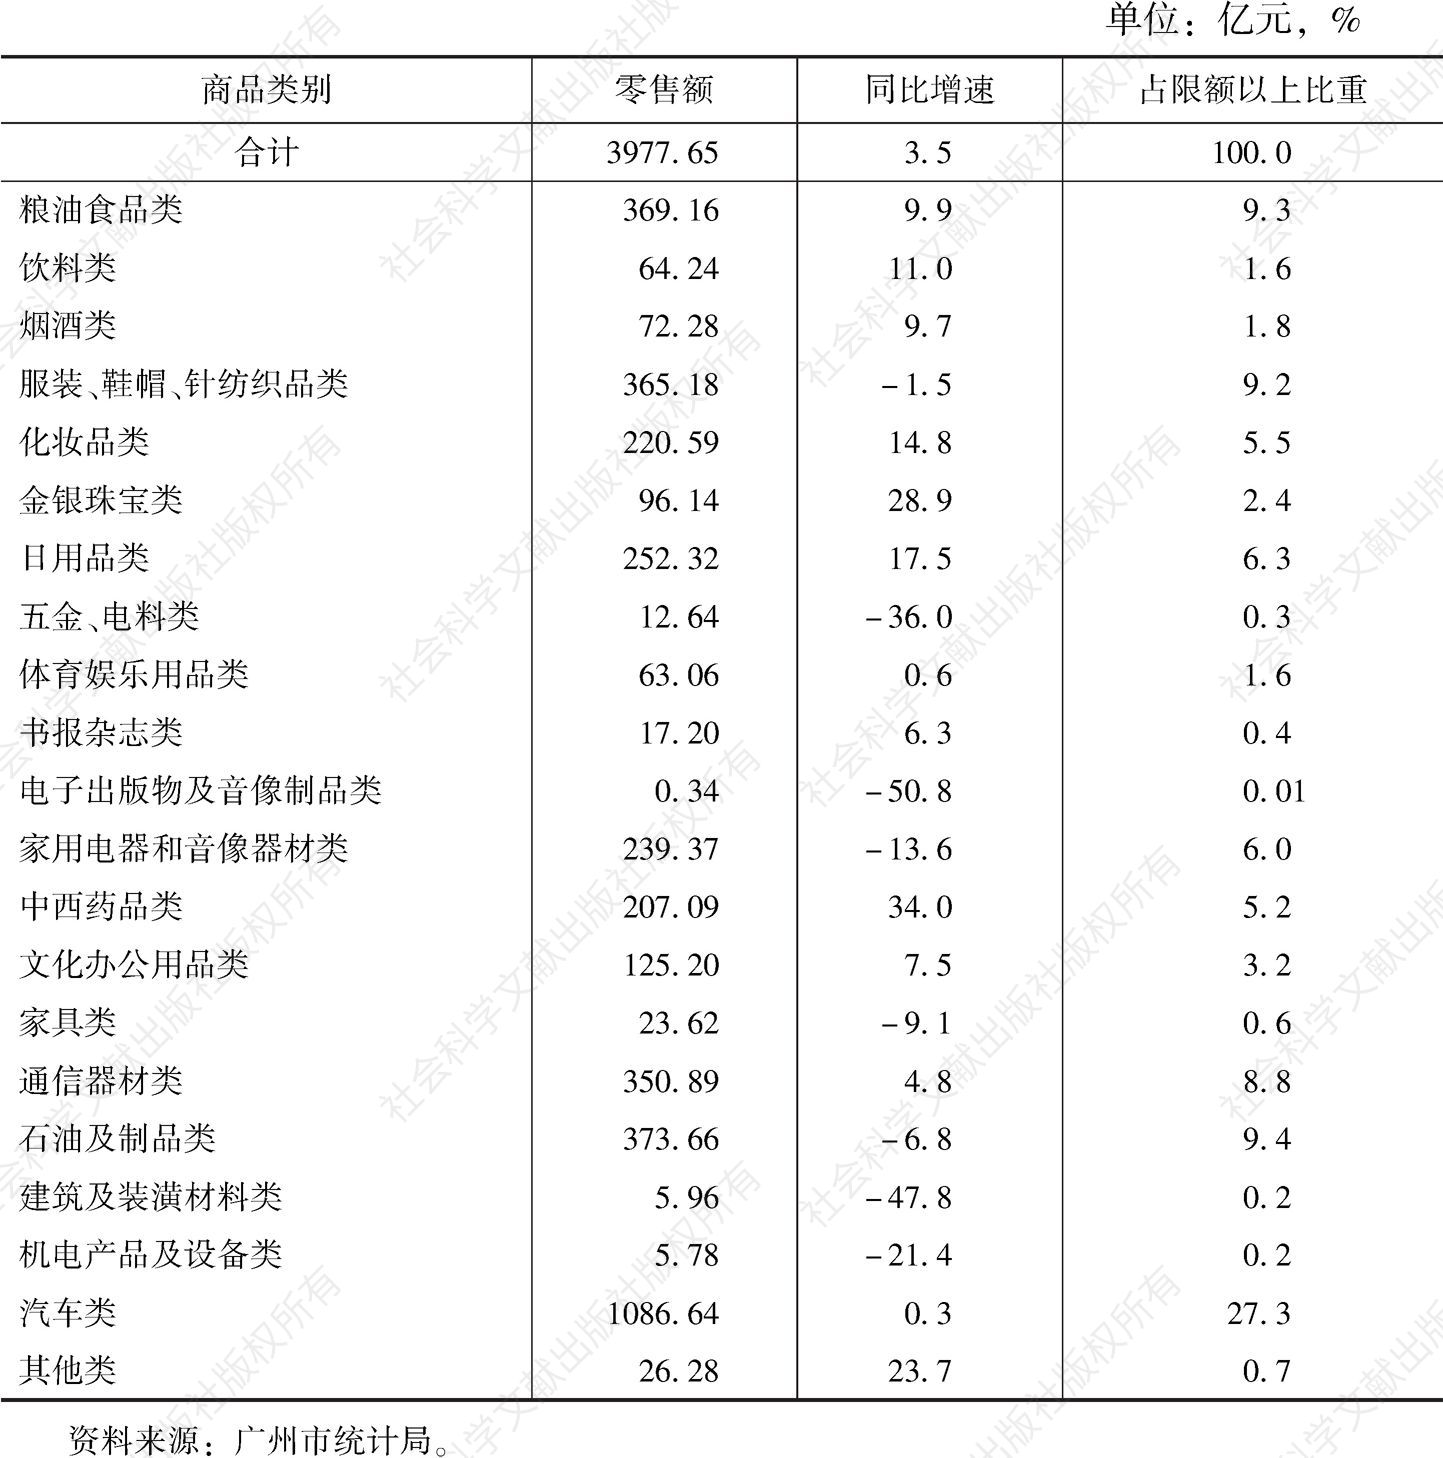 表2 2019年广州市限额以上批发和零售业商品类别零售额结构情况